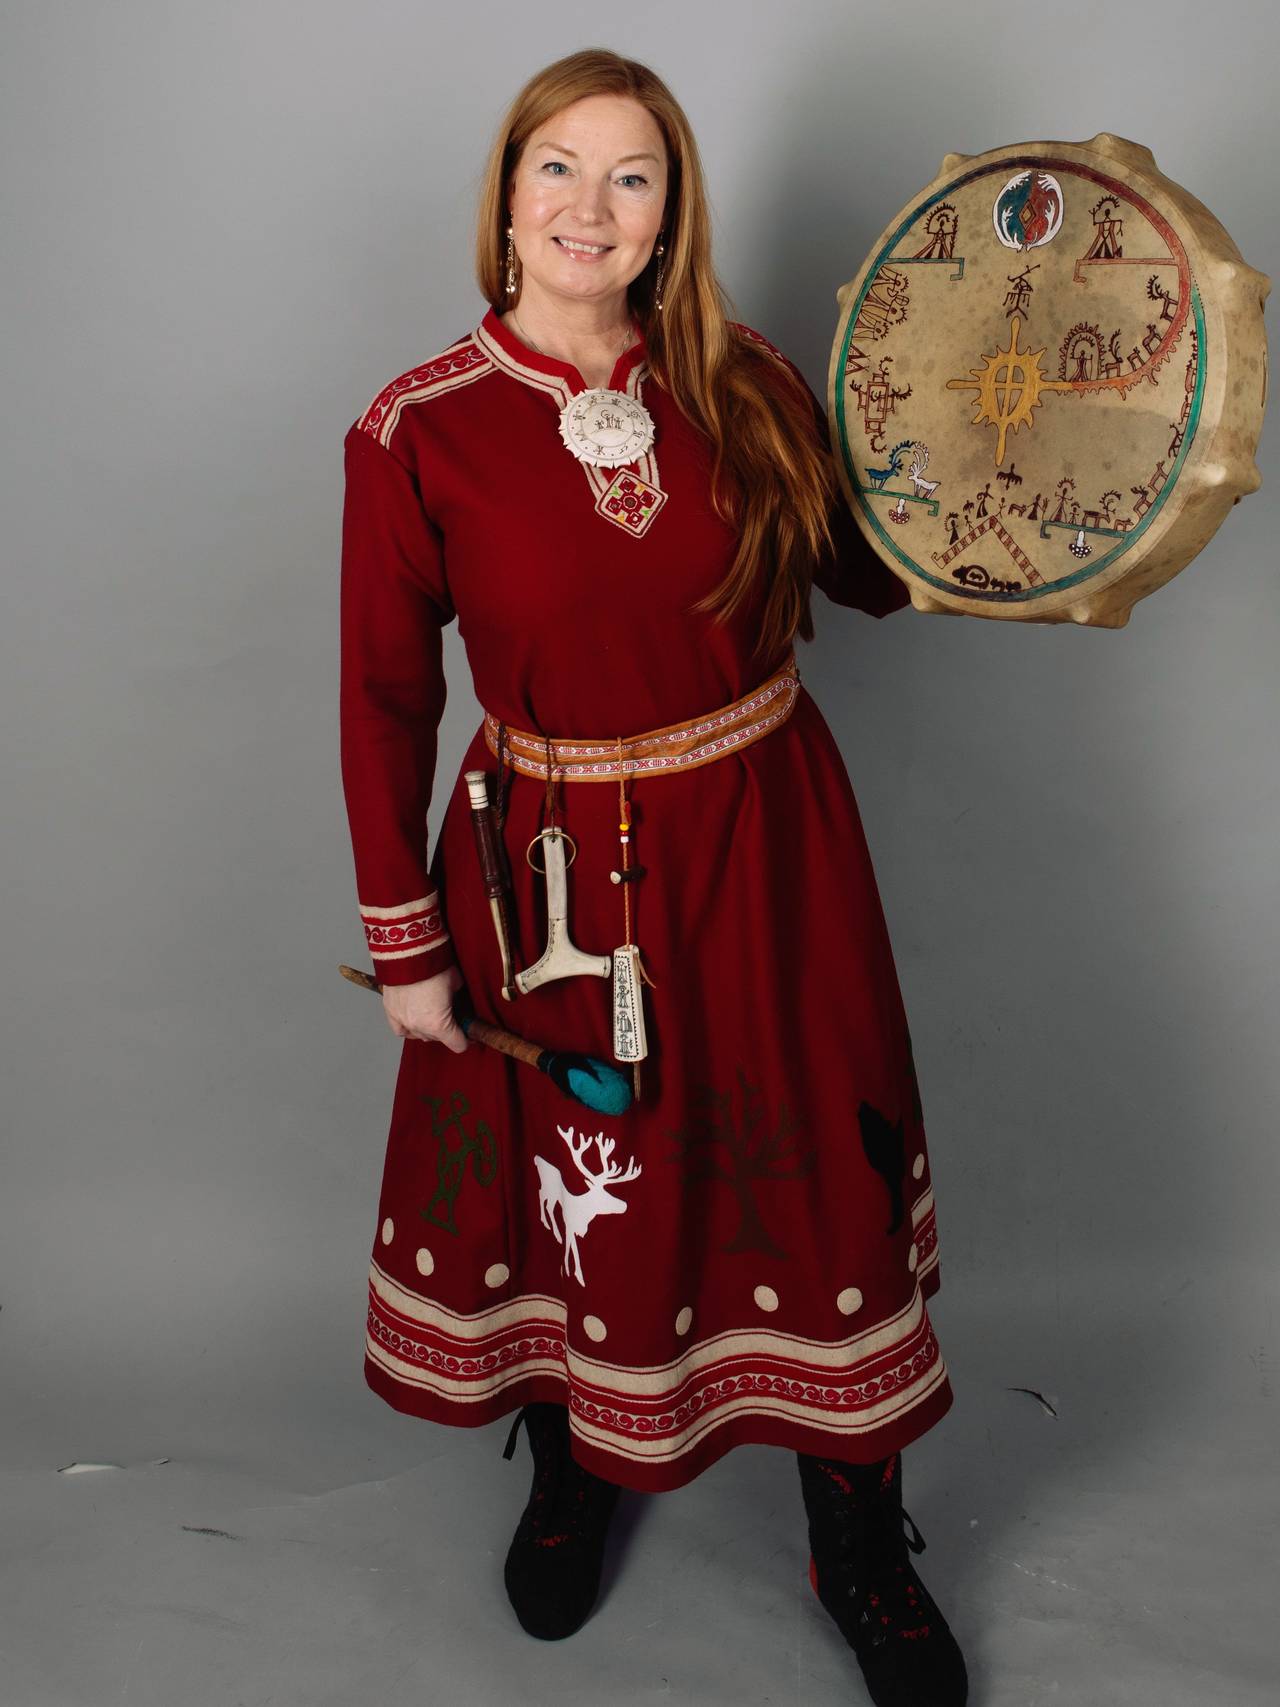 Totalbilde av Lone i seremonidrakt som hun bruker ved trommereiser ol.